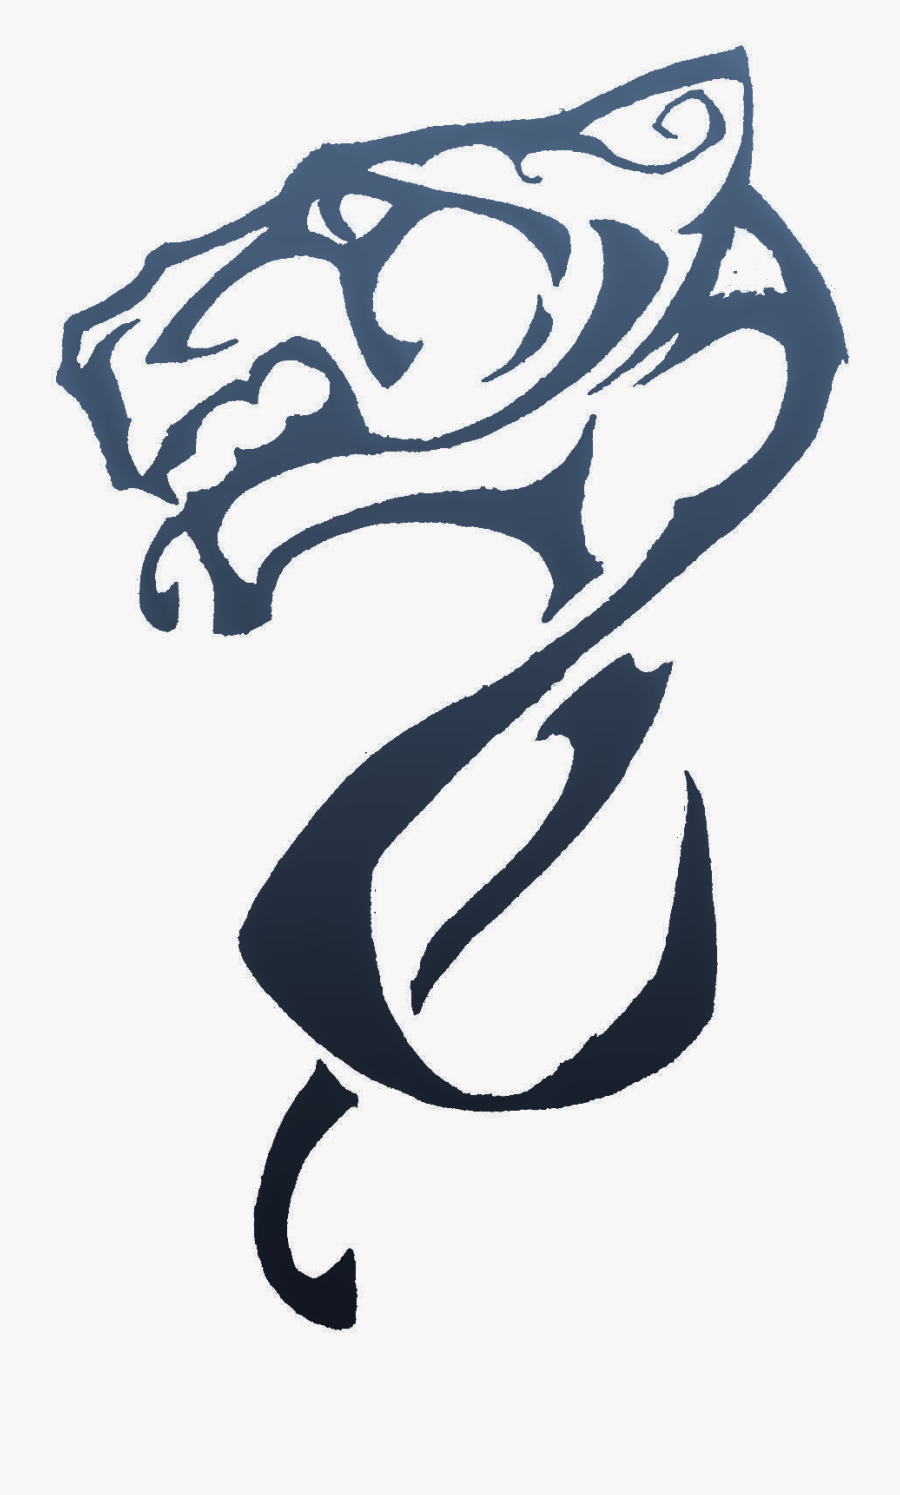 The Banner Of Snow Leopard - Snow Leopard Logo Transparent, Transparent Clipart